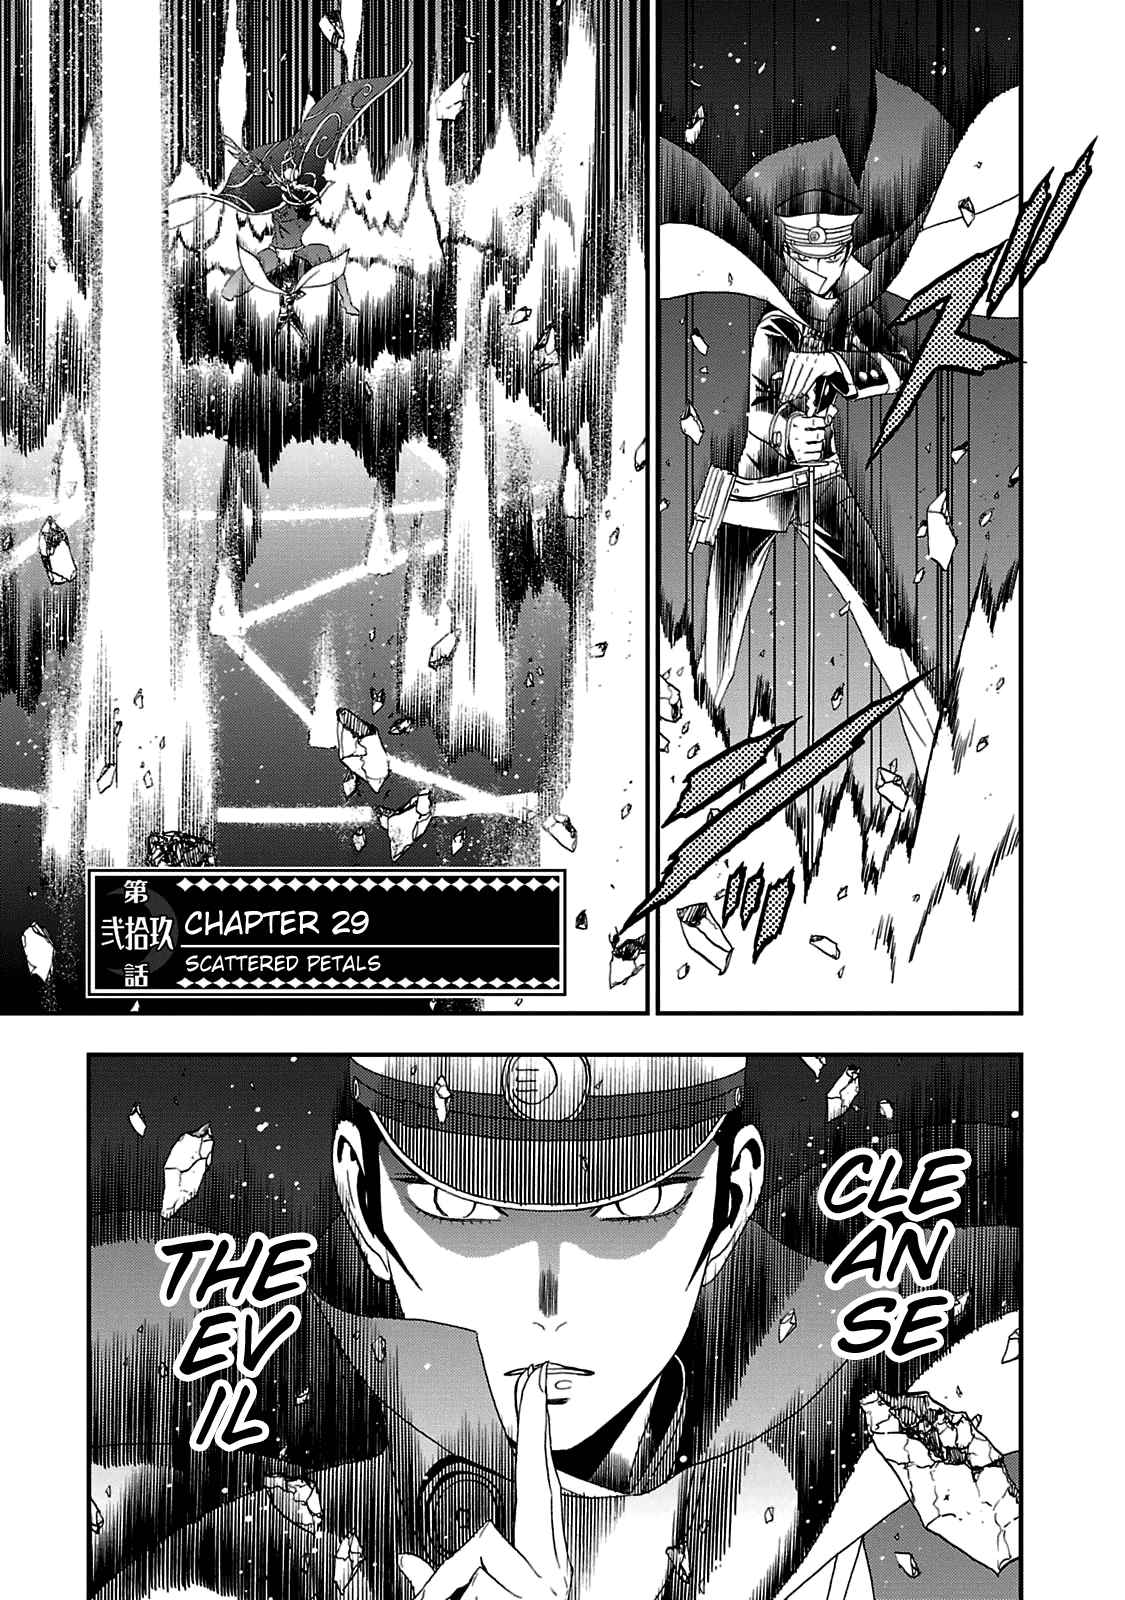 Shin Megami Tensei: Devil Summoner Kuzunoha Raidou Tai Kodokuno Marebito Vol. 5 Ch. 29 Scattered Petals